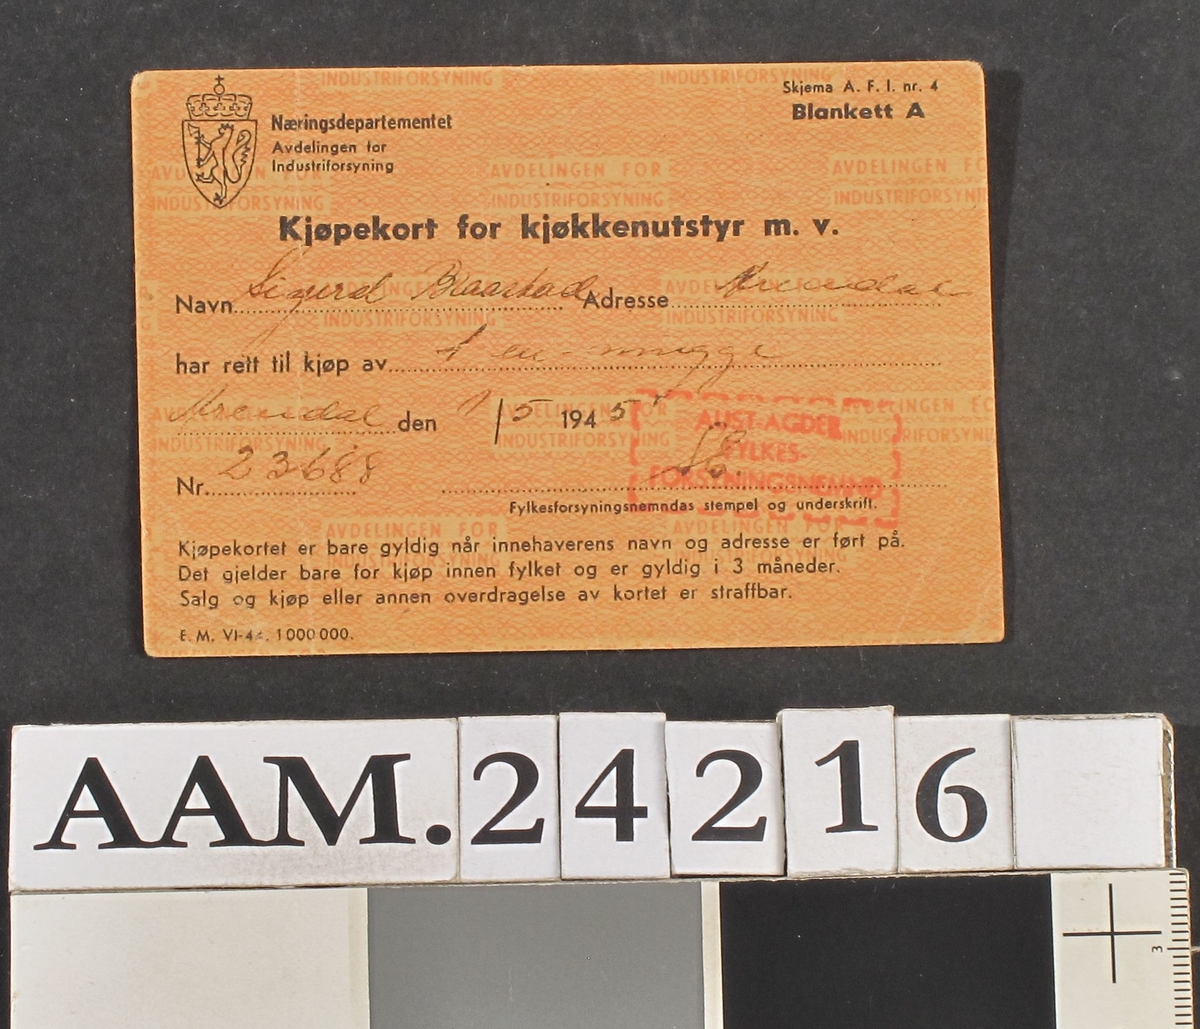 Kjøpekort for kjøkkenutstyr, 1945 Småmønstret papir med overskrift som over. Føyd til med blekk:  Sigurd Braastad , Arendal , har rett til kjøp av 1 en mugge. Arendal 1/5 1945. Nr. 23688. På baksiden: regler "Ved salg av metall."